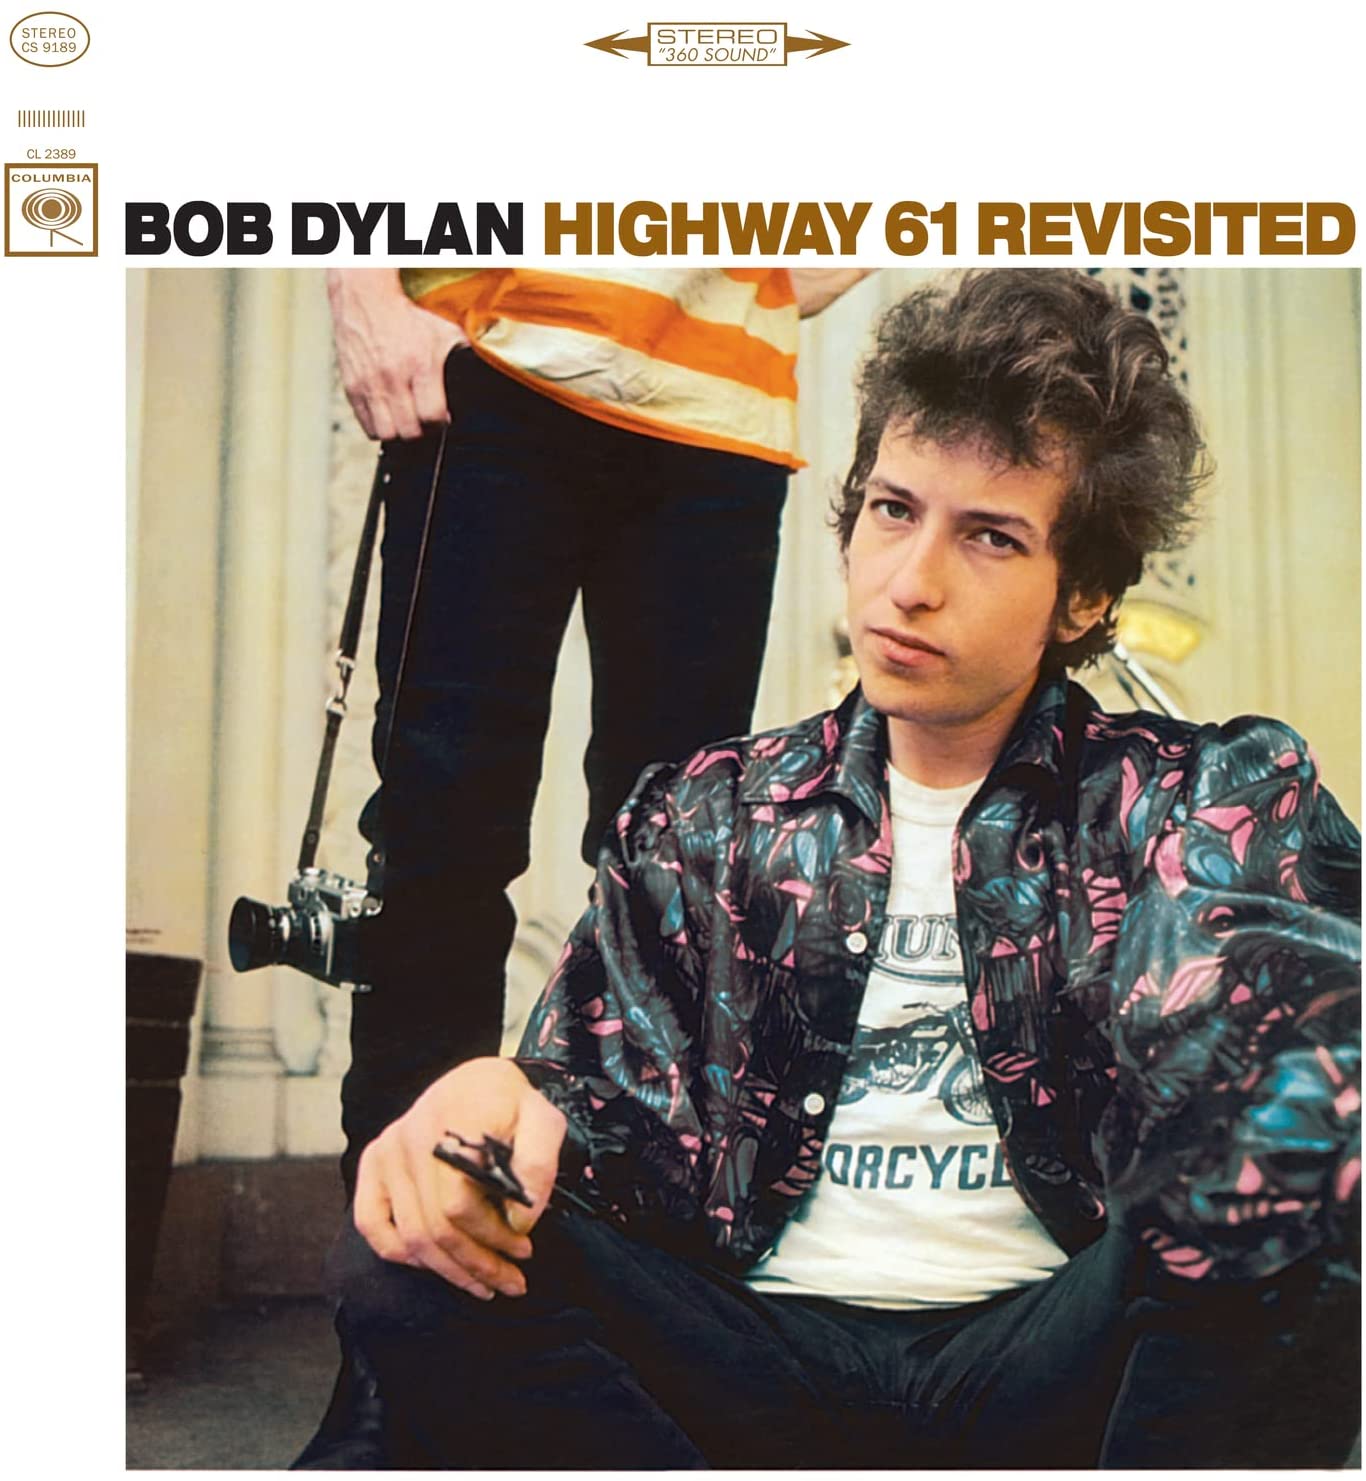 Highway 61 Revisited | Bob Dylan image